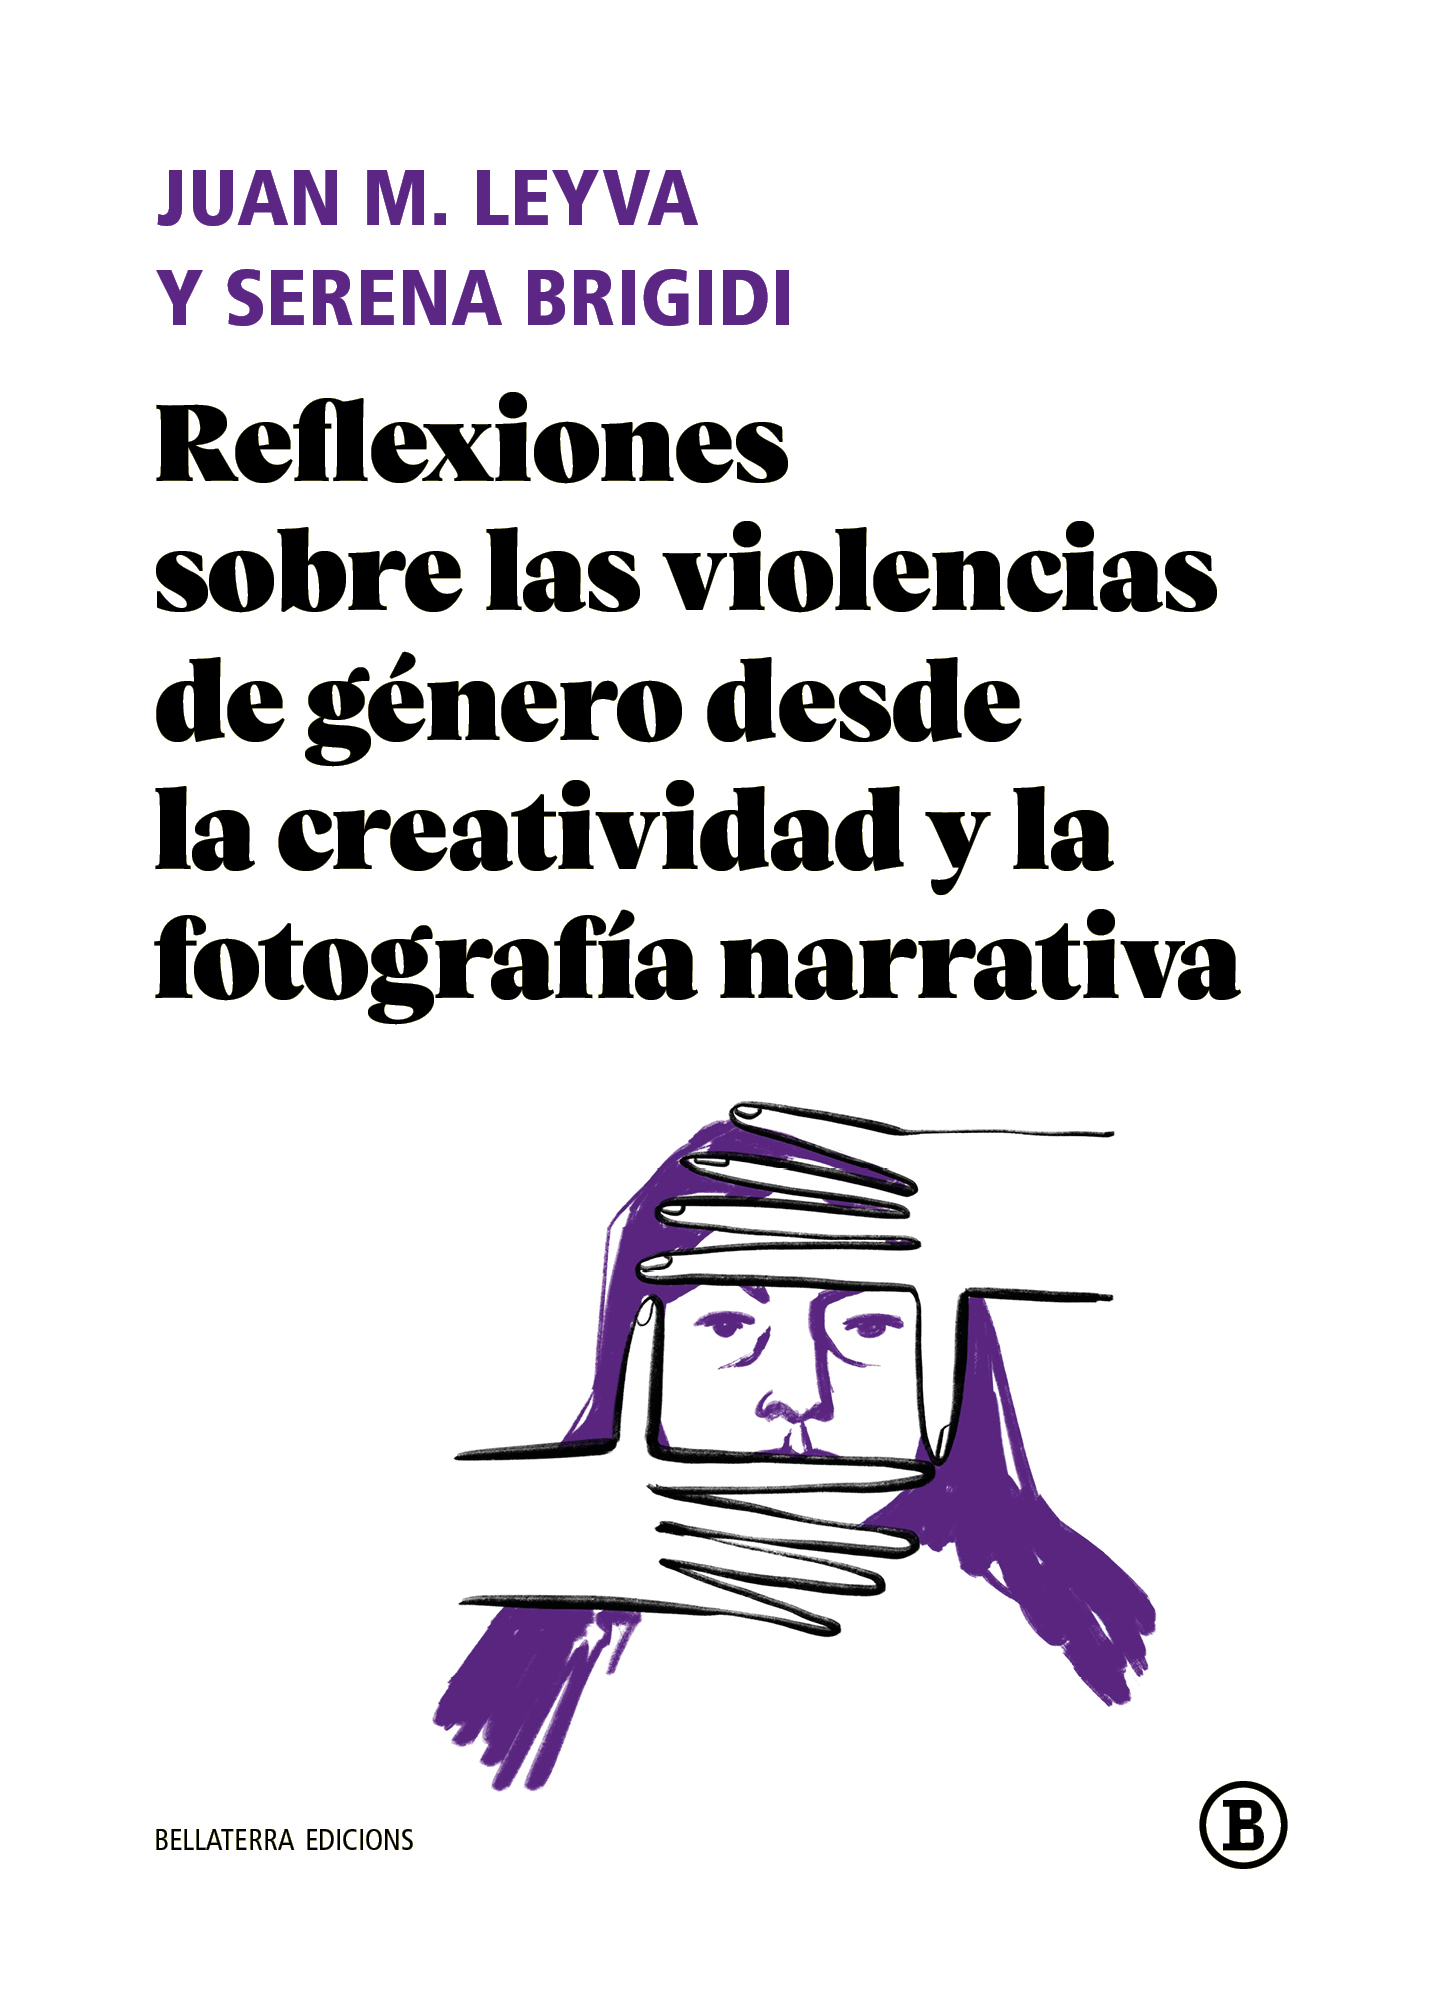 Imagen de portada del libro Reflexiones sobre las violencias de género desde la creatividad y la fotografía narrativa